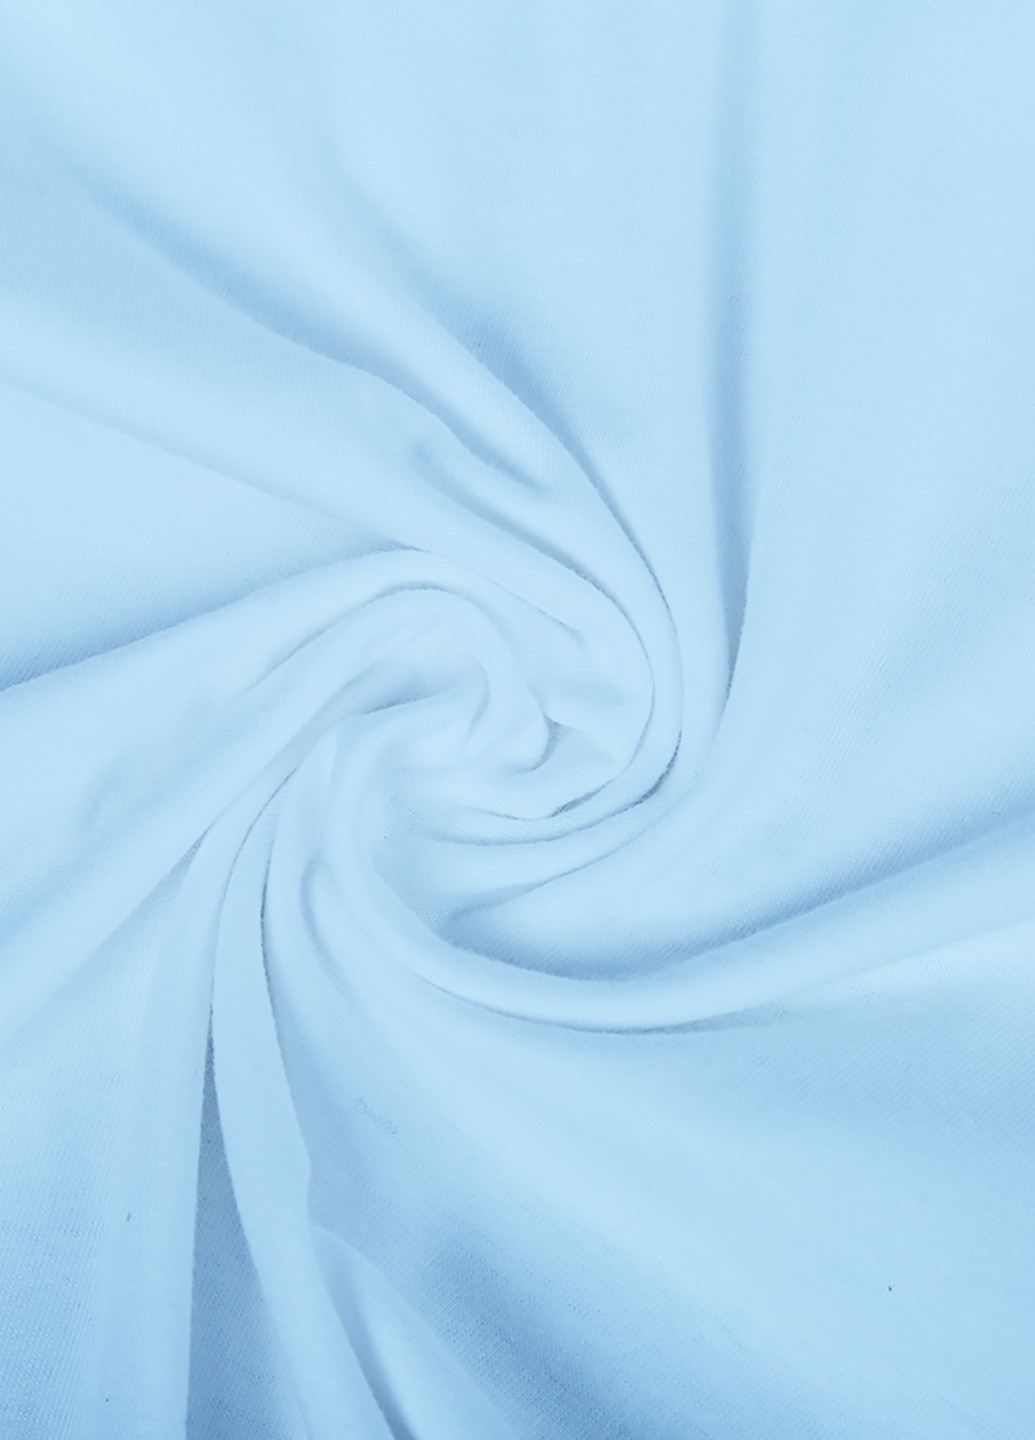 Блакитна демісезонна футболка дитяча лайк єдиноріг (likee unicorn) (9224-1037) MobiPrint